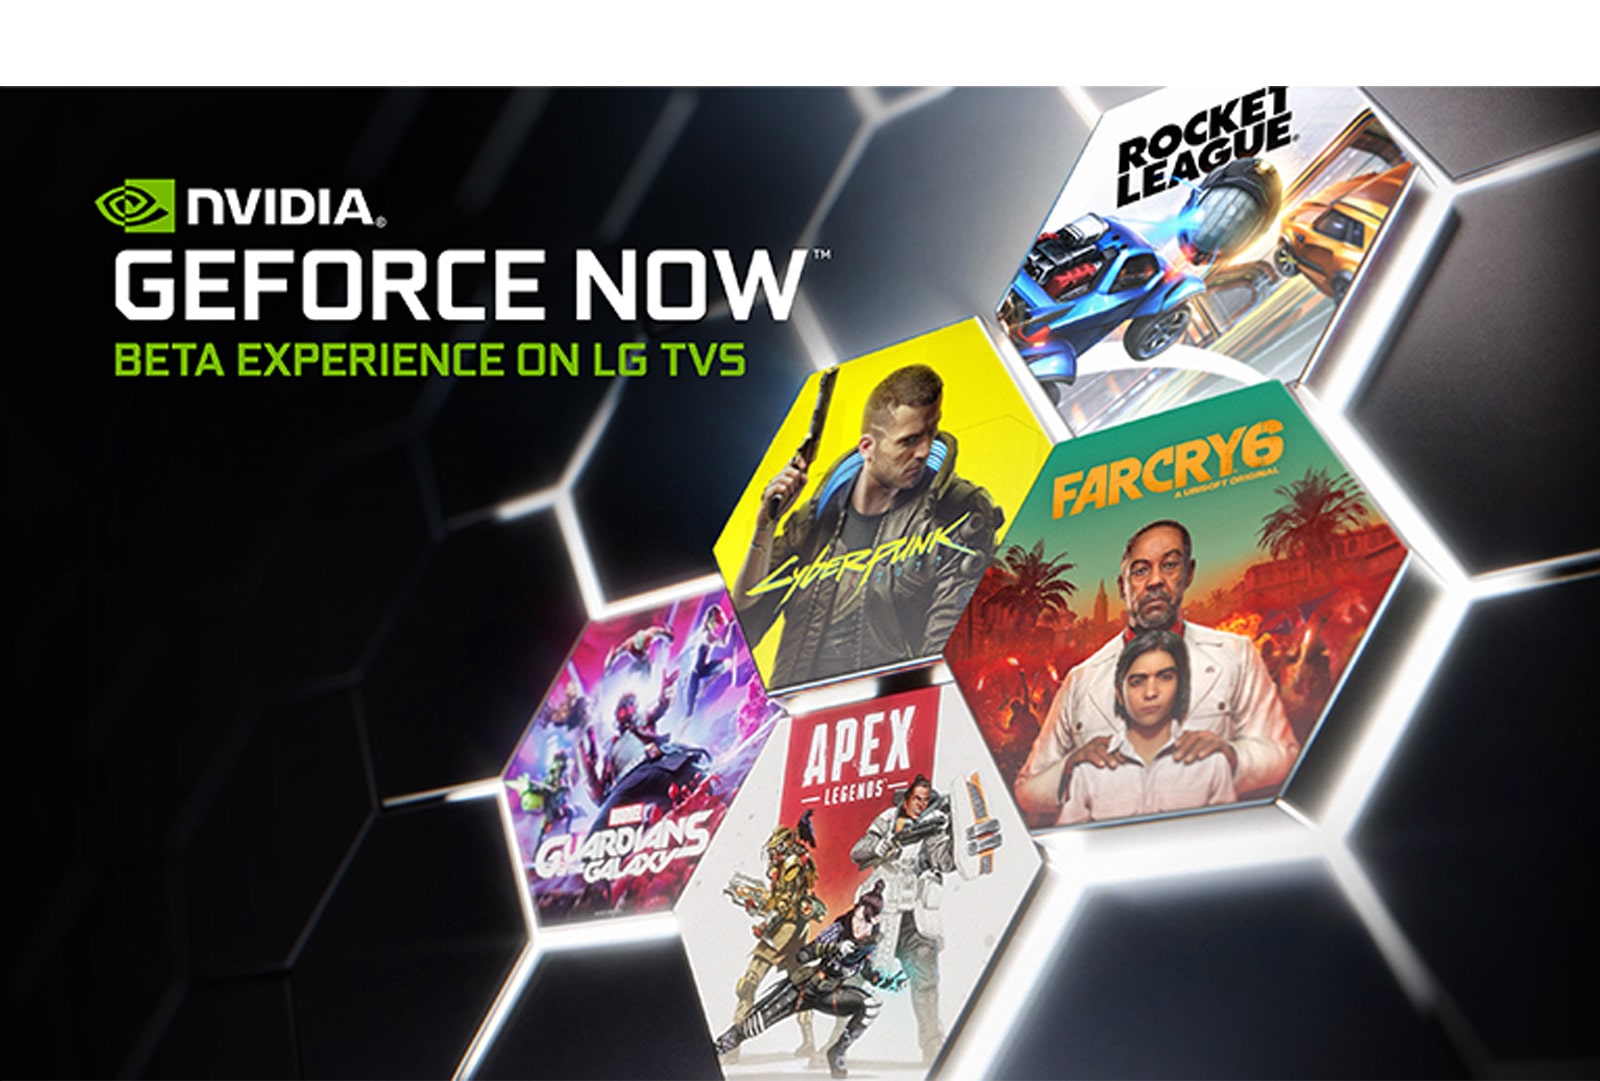 Imaginea cu sigla GeForce Now pe un fundal întunecat. Coperta și titlurile mai multor jocuri populare sunt afișate.